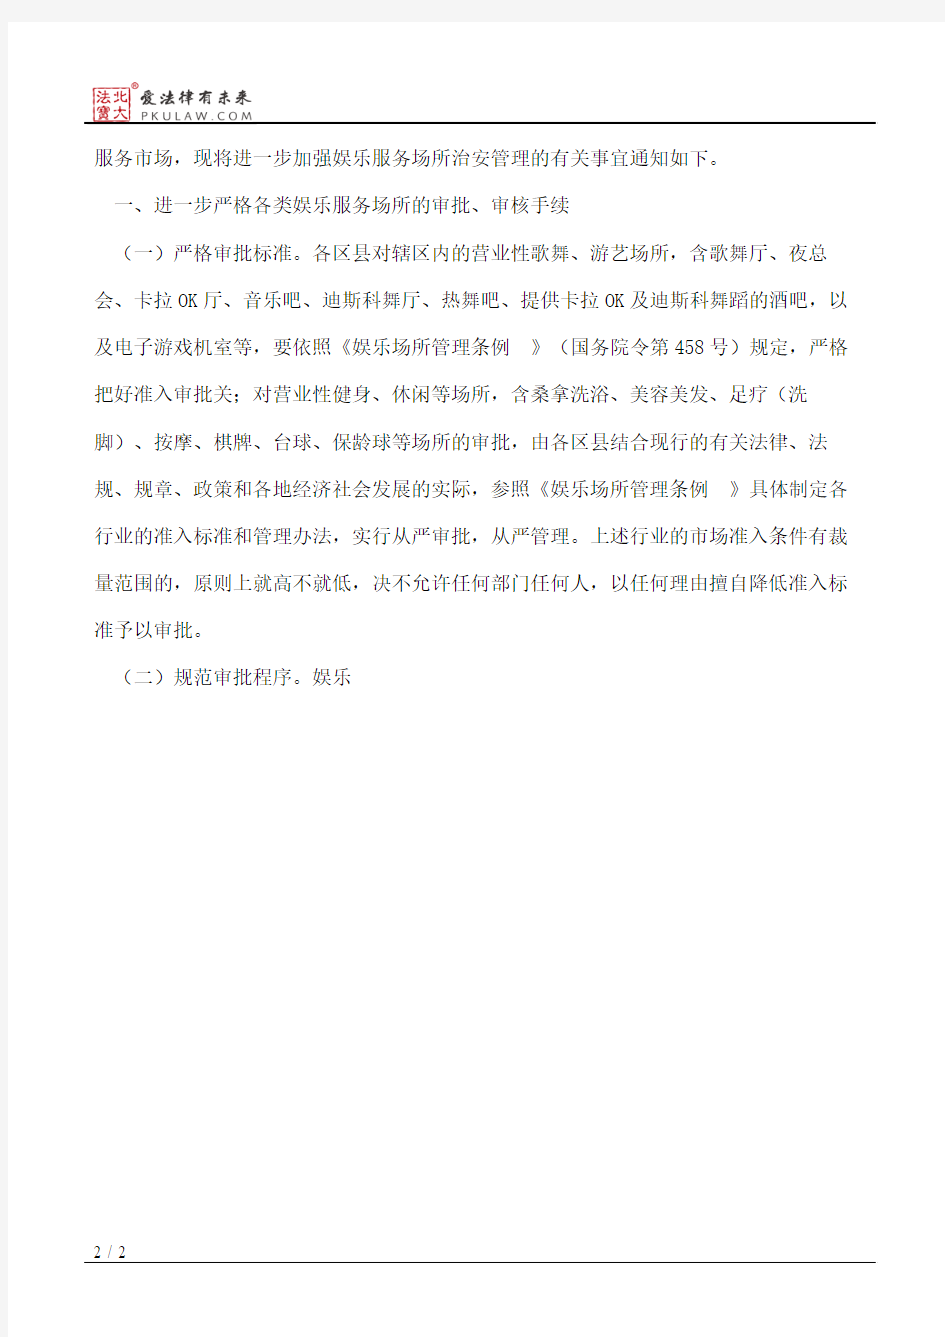 丽江市人民政府关于进一步加强娱乐服务场所治安管理的通知